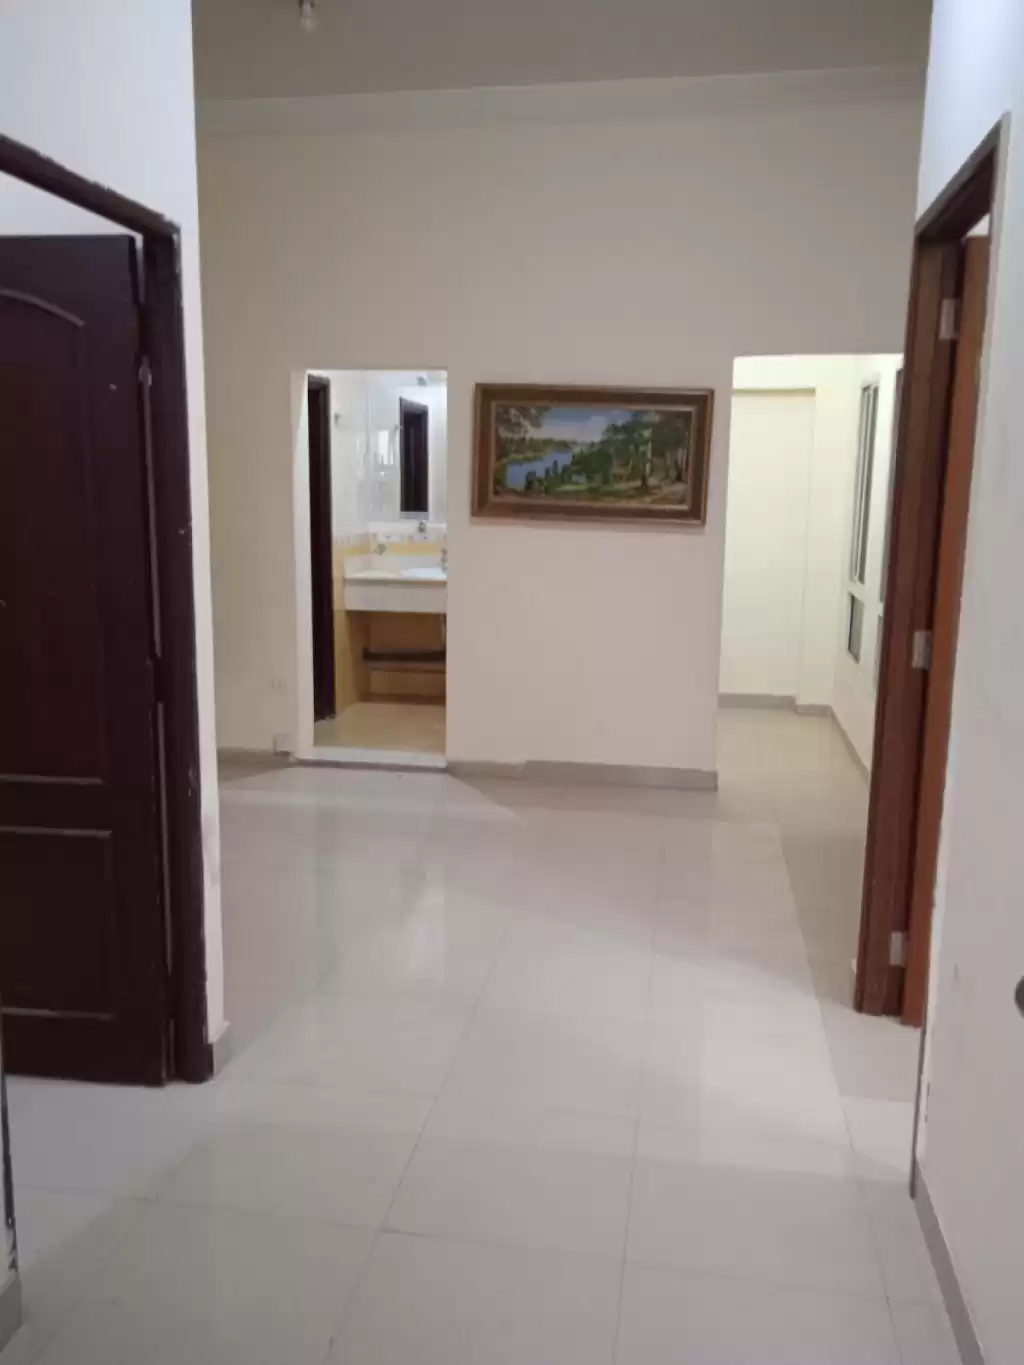 Résidentiel Propriété prête 2 chambres U / f Appartement  a louer au Al-Sadd , Doha #13771 - 1  image 